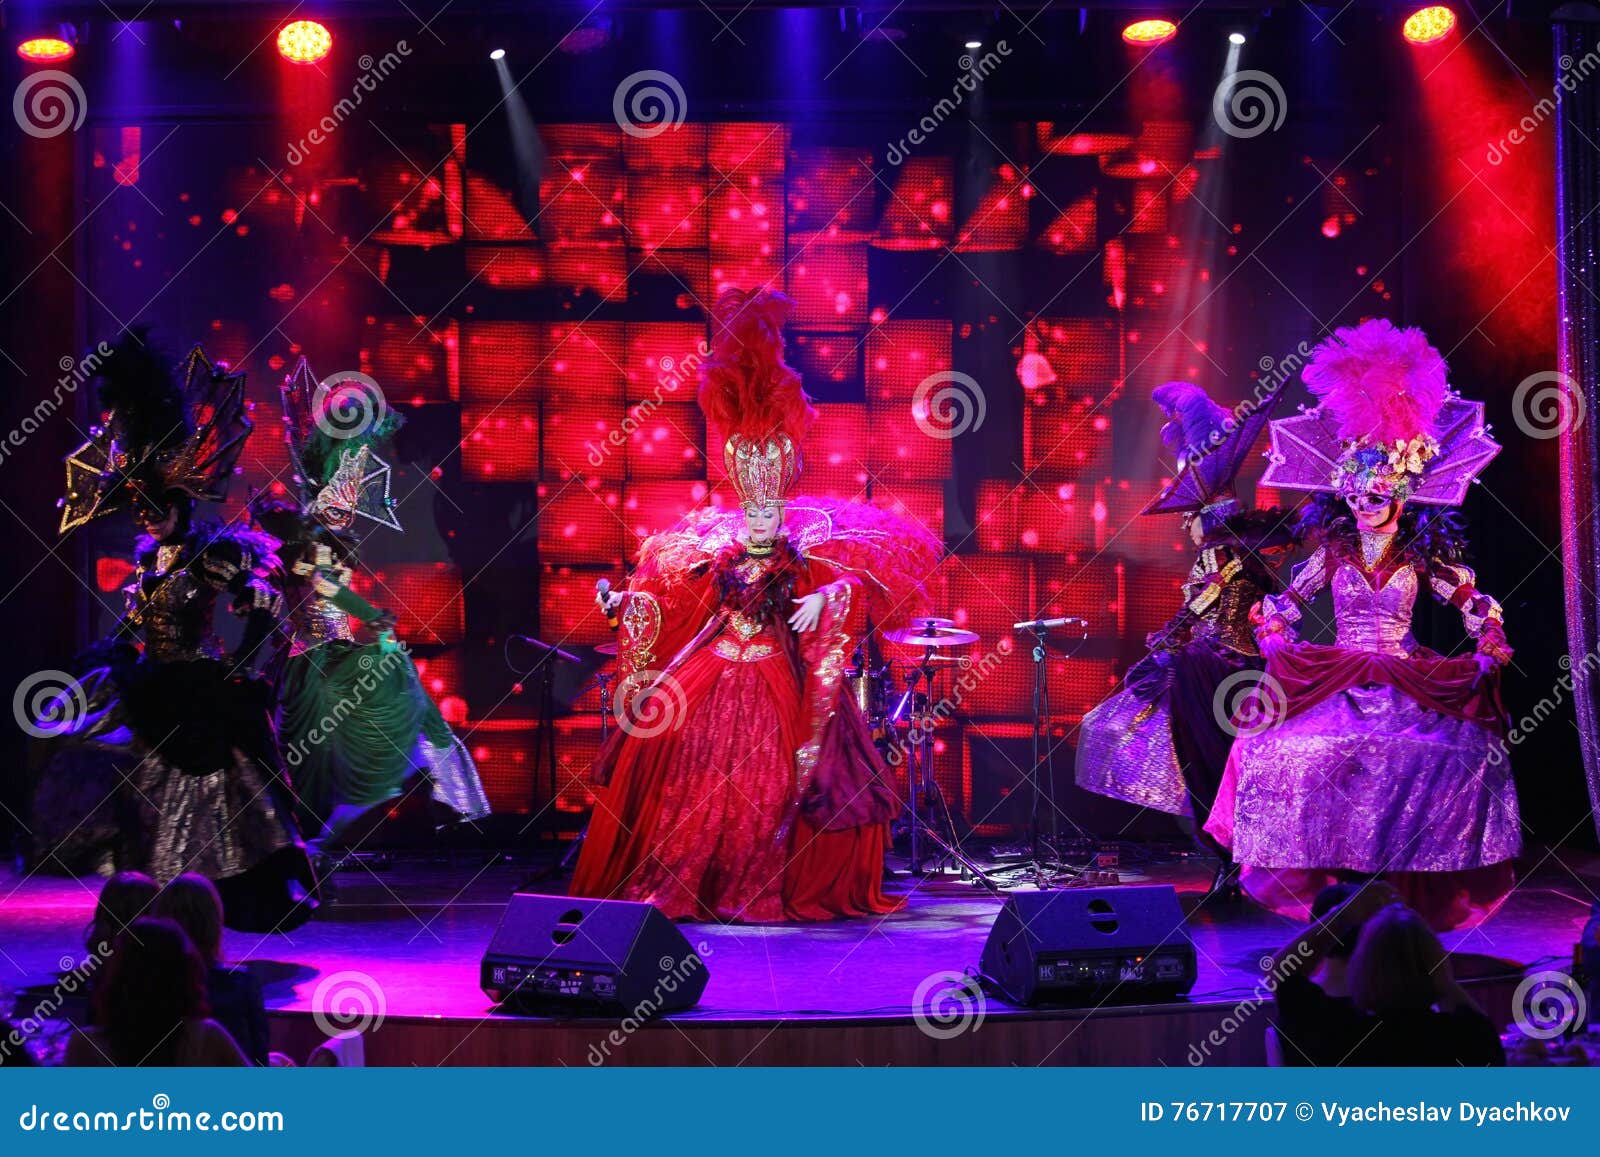 Το ύφος παρισινό cabaret Στη σκηνή σε μια θεαματική επίδειξη του μουσικού πρωθυπουργού θεάτρων. Στο στάδιο ενός νυχτερινού κέντρου διασκέδασης Ολυμπία, Άγιος Πετρούπολη, Ρωσία, Ευρώπη 21/05/2016 Η πρεμιέρα επίδειξη-μπαλέτου οργανώθηκε το 2006 στη Αγία Πετρούπολη, χορογράφος Vasily Kirov Η σφραγίδα του ΠΡΩΘΥΠΟΥΡΓΟΥ επίδειξη-μπαλέτου είναι ένας συνδυασμός χορού: τρυφερότητα και πάθος, ενέργεια και ειδύλλιο, της αγάπης και του μίσους, της αισθησιασμού και της αξιοπρέπειας Ο πρωθυπουργός περιλαμβάνει τις καλύτερες παραδόσεις μουσικού θεάτρου! Με το πλούσιο ρεπερτόριό του, το ακροατήριο θα είναι σε θέση να είναι στο καρναβάλι στο Ρίο ντε Τζανέιρο, για να αξιολογήσει την ερμηνεία και το μυστήριο του βασιλικού δικαστηρίου στην ενετική μεταμφίεση σε μια στιγμή για να δει τον παρισινό τετράχορο και ένα πραγματικό γαλλικό κανκάν! Τα πολυτελή φτερά παρουσιάζουν μόνο εδώ, στο ρουζ Moulin! Τα λατρευτά ballerinas θα πάρουν όλα στα φτερά του Firebird στον κόσμο των ρωσικών παραμυθιών! Παρουσιάστε ότι ΑΡΧΑΙΟΤΕΡΟ â€ «είναι η καλύτερη παράδοση μουσικού θεάτρου! Παρουσιάστε ΑΡΧΑΙΟΤΕΡΟ â€ «που είναι κομψότητα και επιείκεια, πάθος και αγάπη!